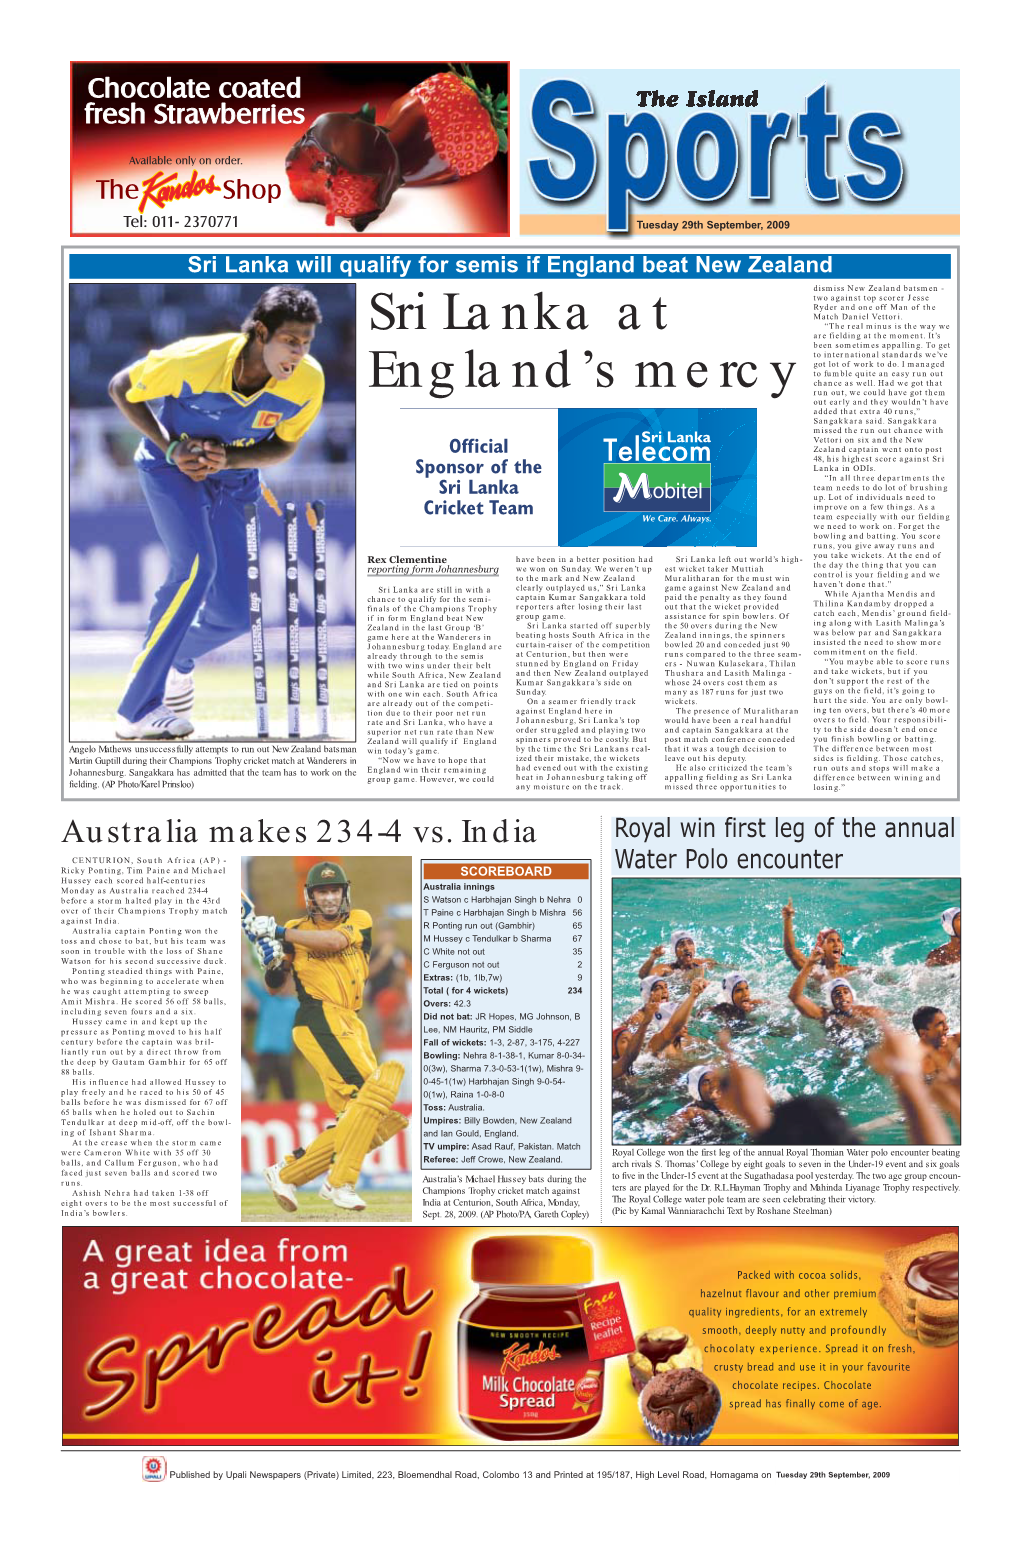 Sri Lanka at England's Mercy